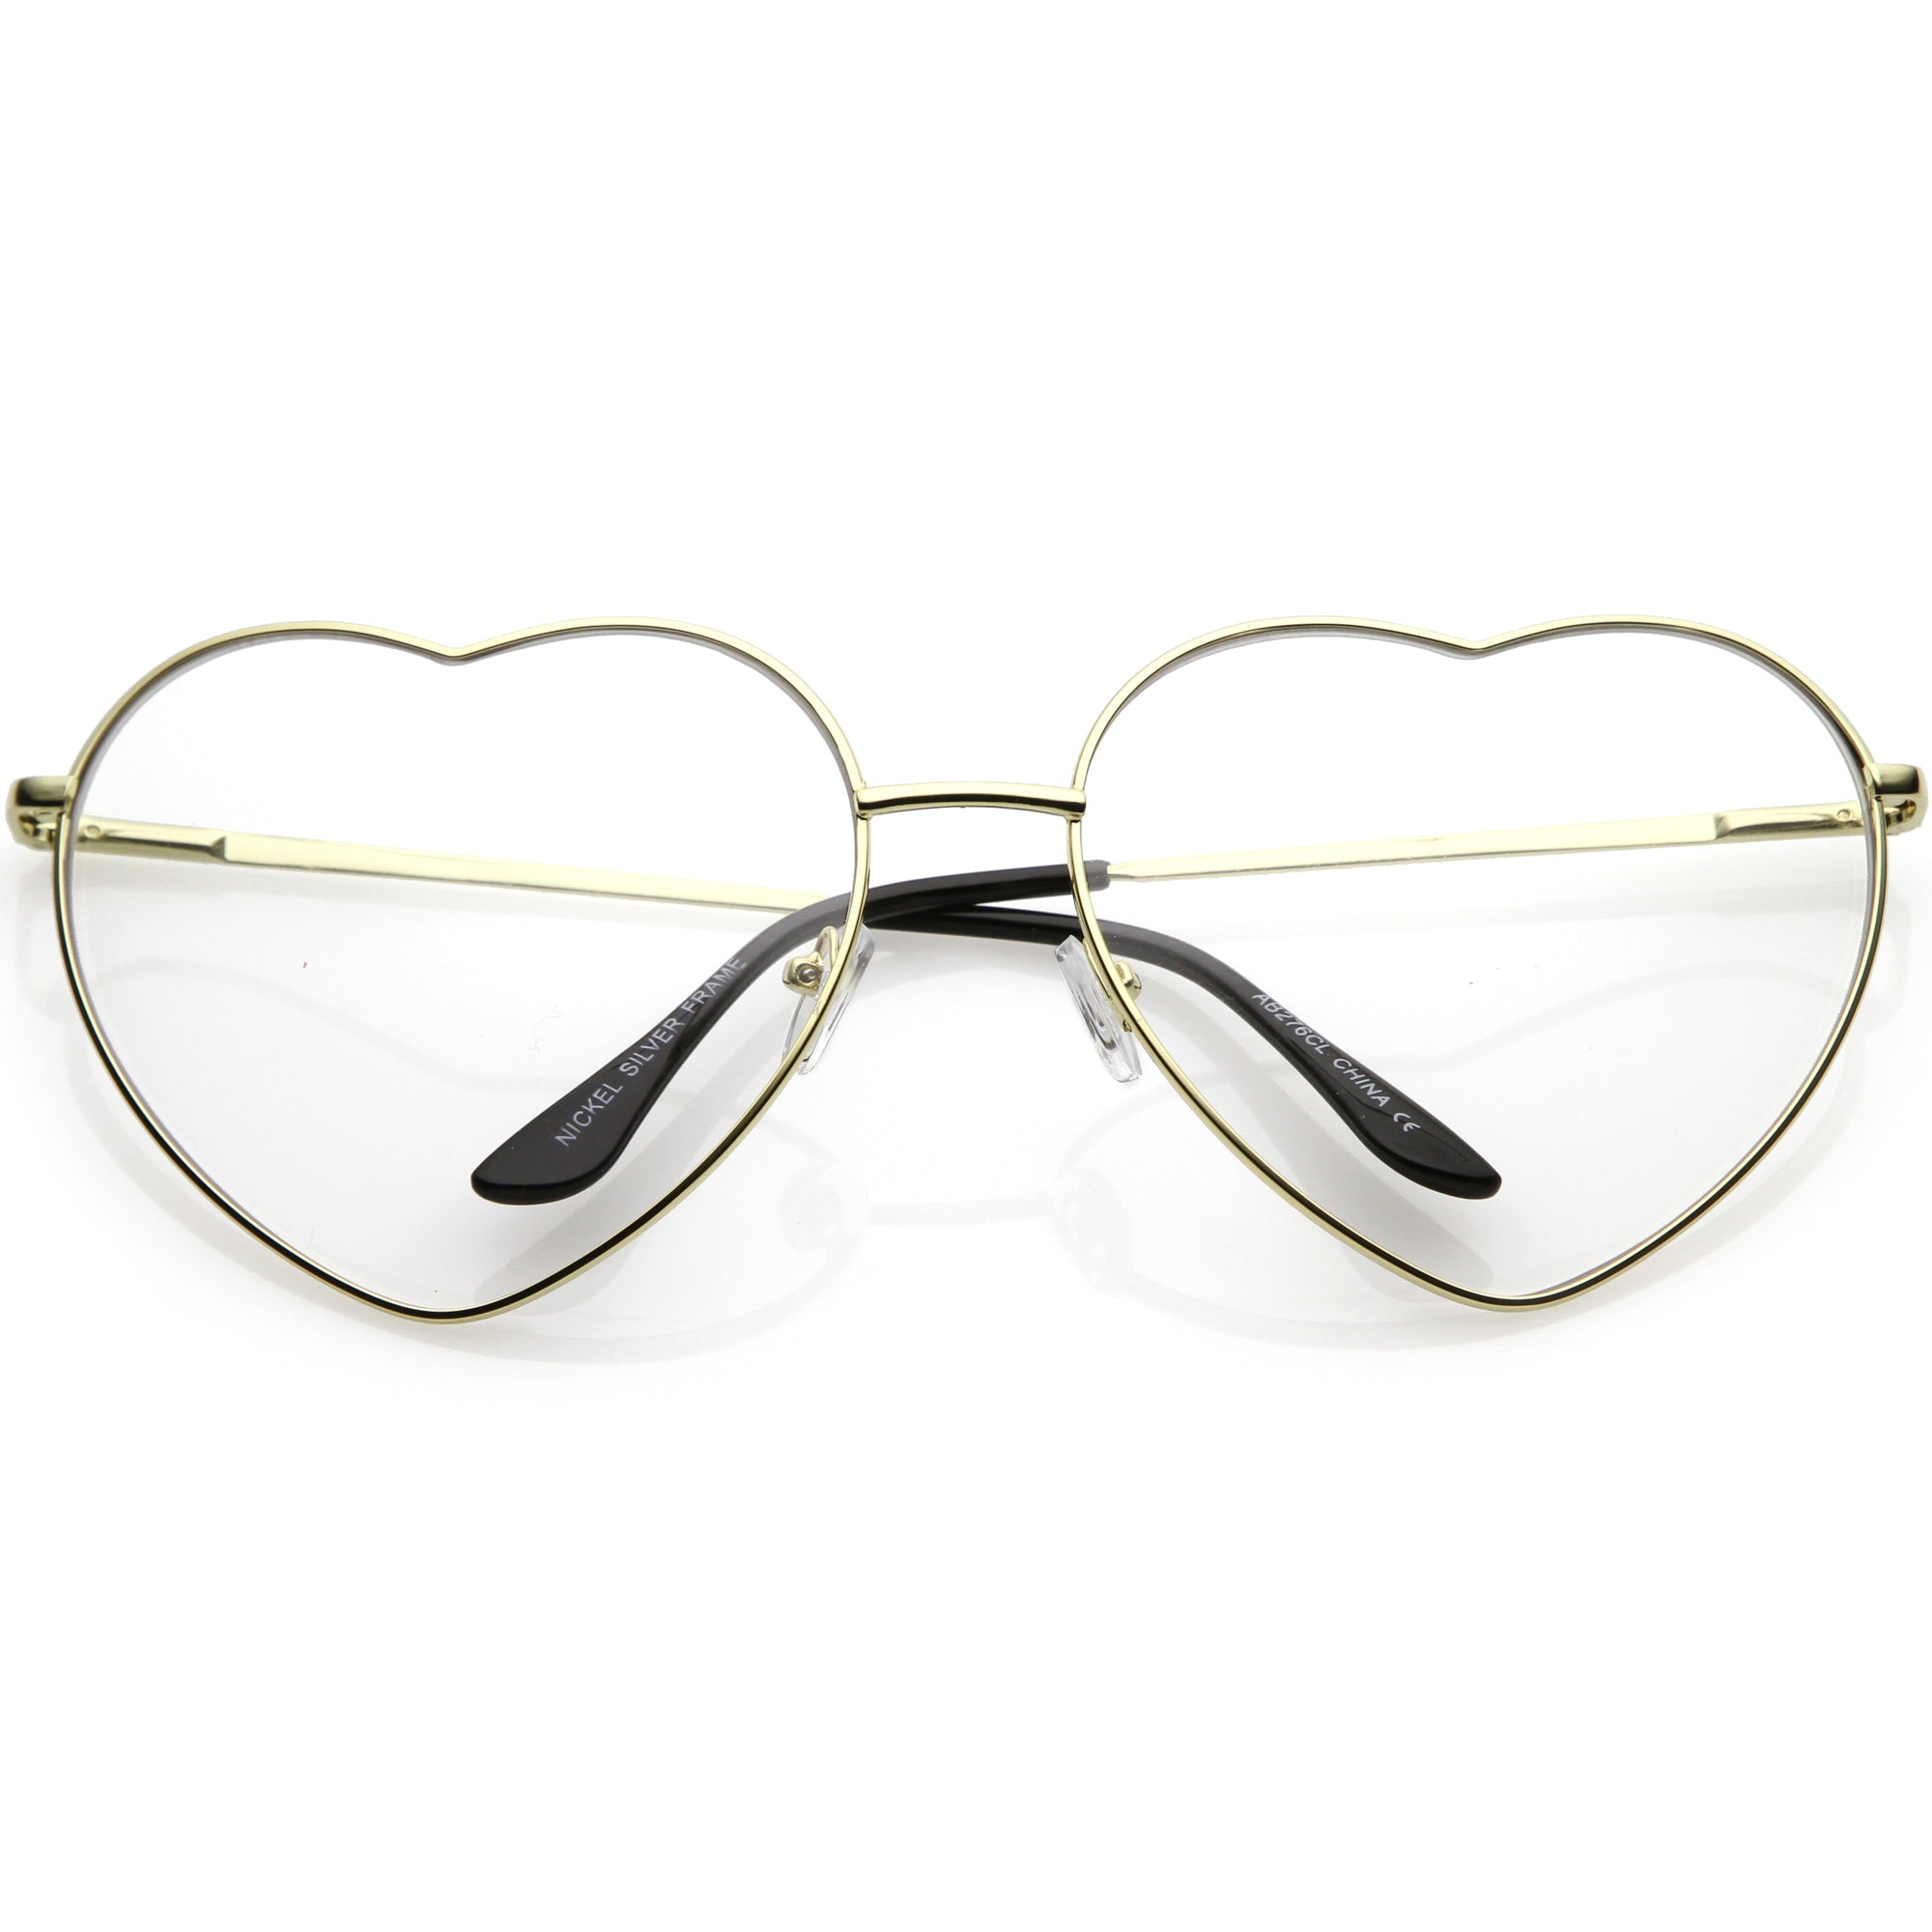 Oversize Women's Festival Heart Shape Clear Lens Glasses C304